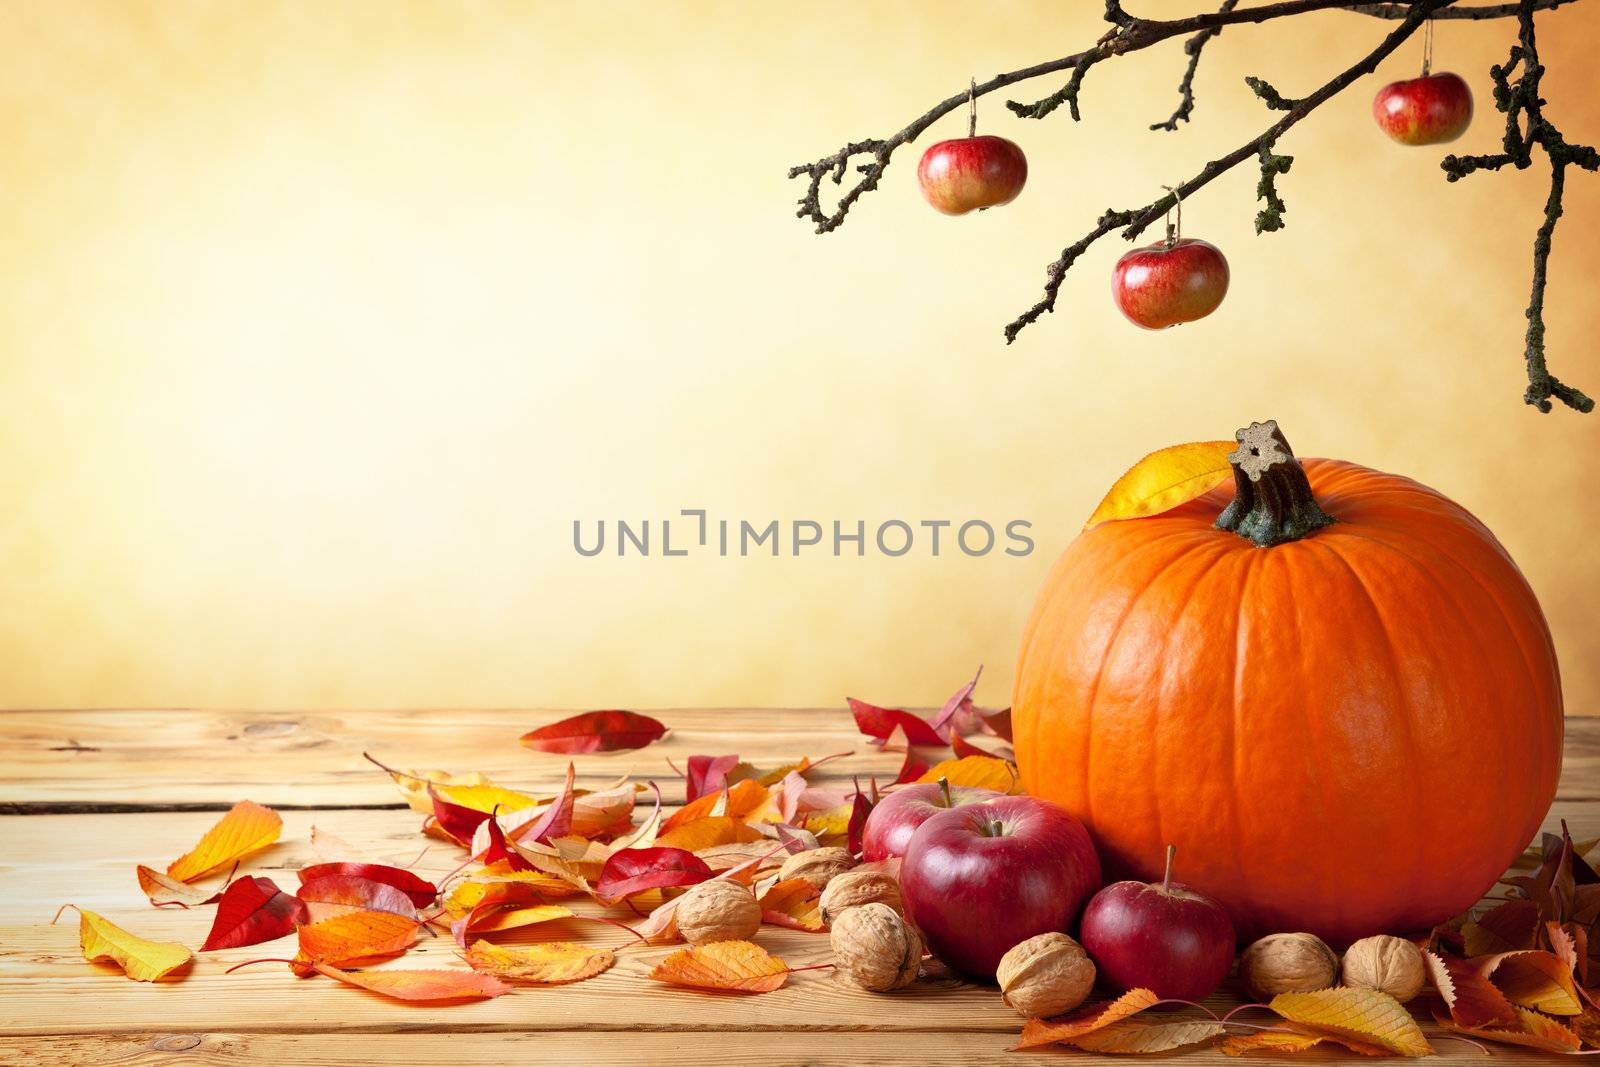 Autumn Concept by bozena_fulawka